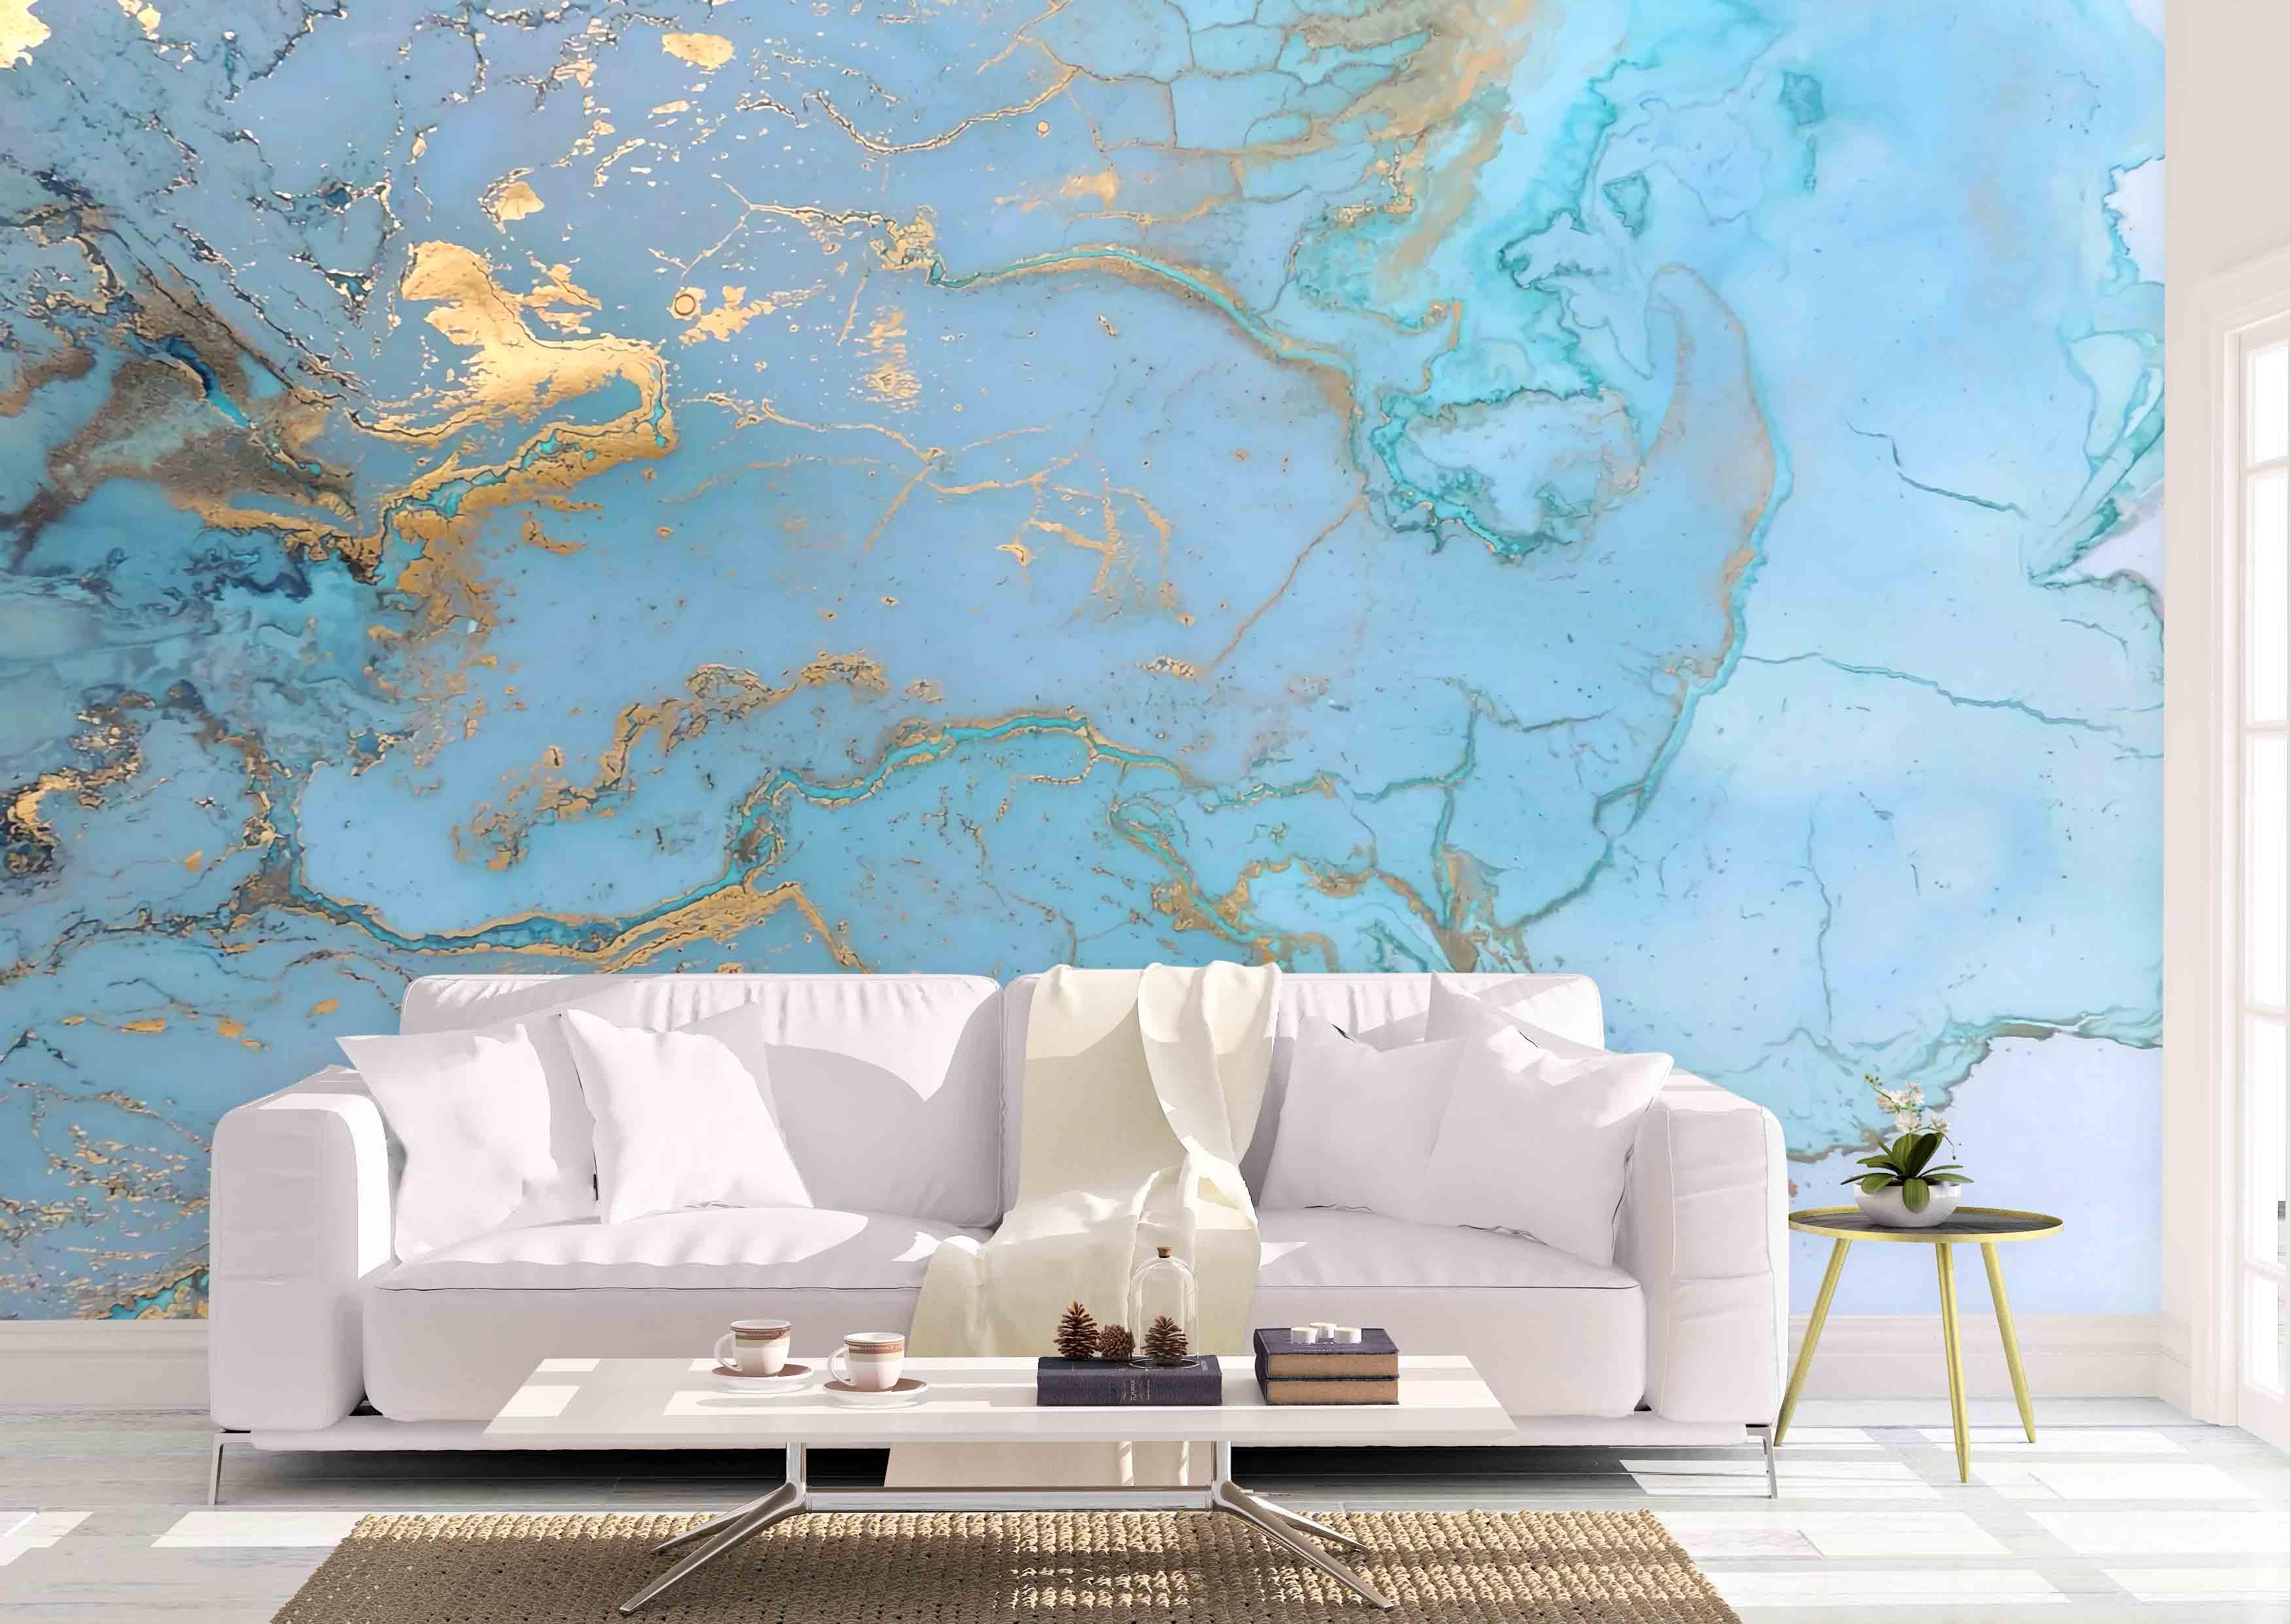 3D Blue Golden Watercolor Wall Mural Wallpaper 22- Jess Art Decoration